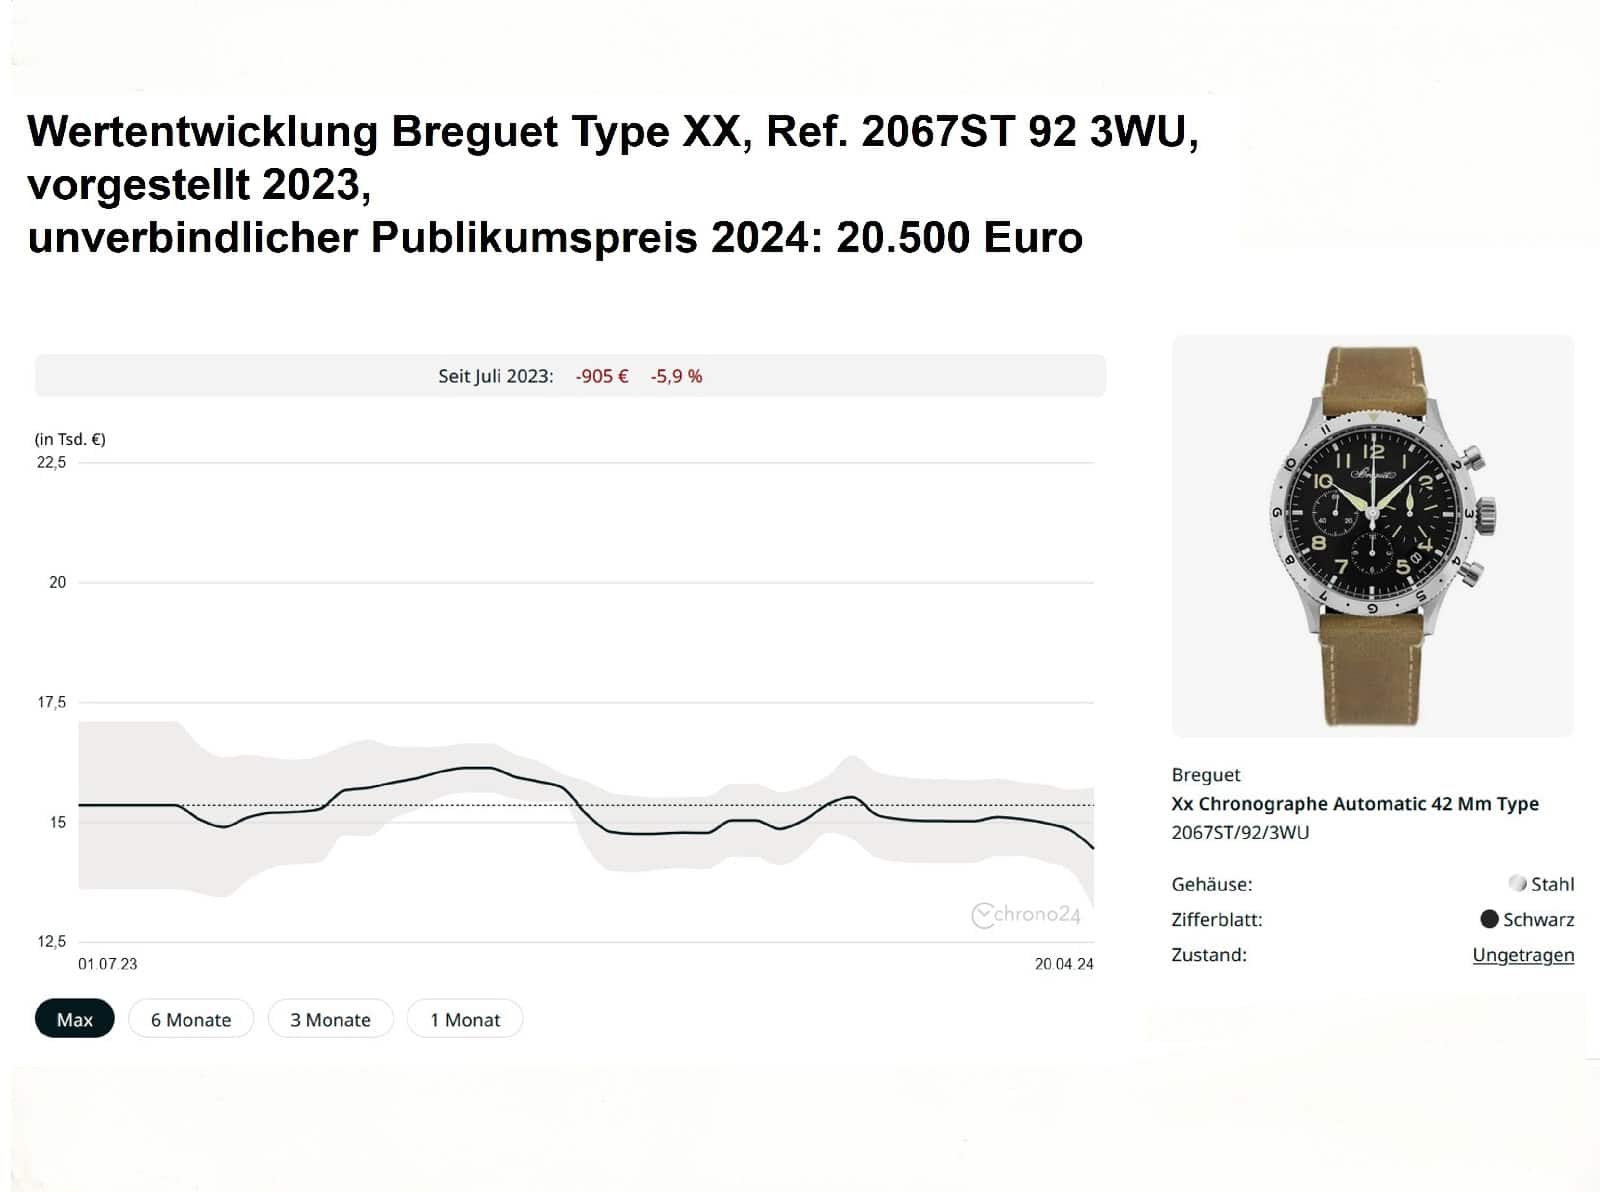 Wertentwicklung Breguet Type XX 2067ST 92 3WU PP 20500 Euro Chrono24